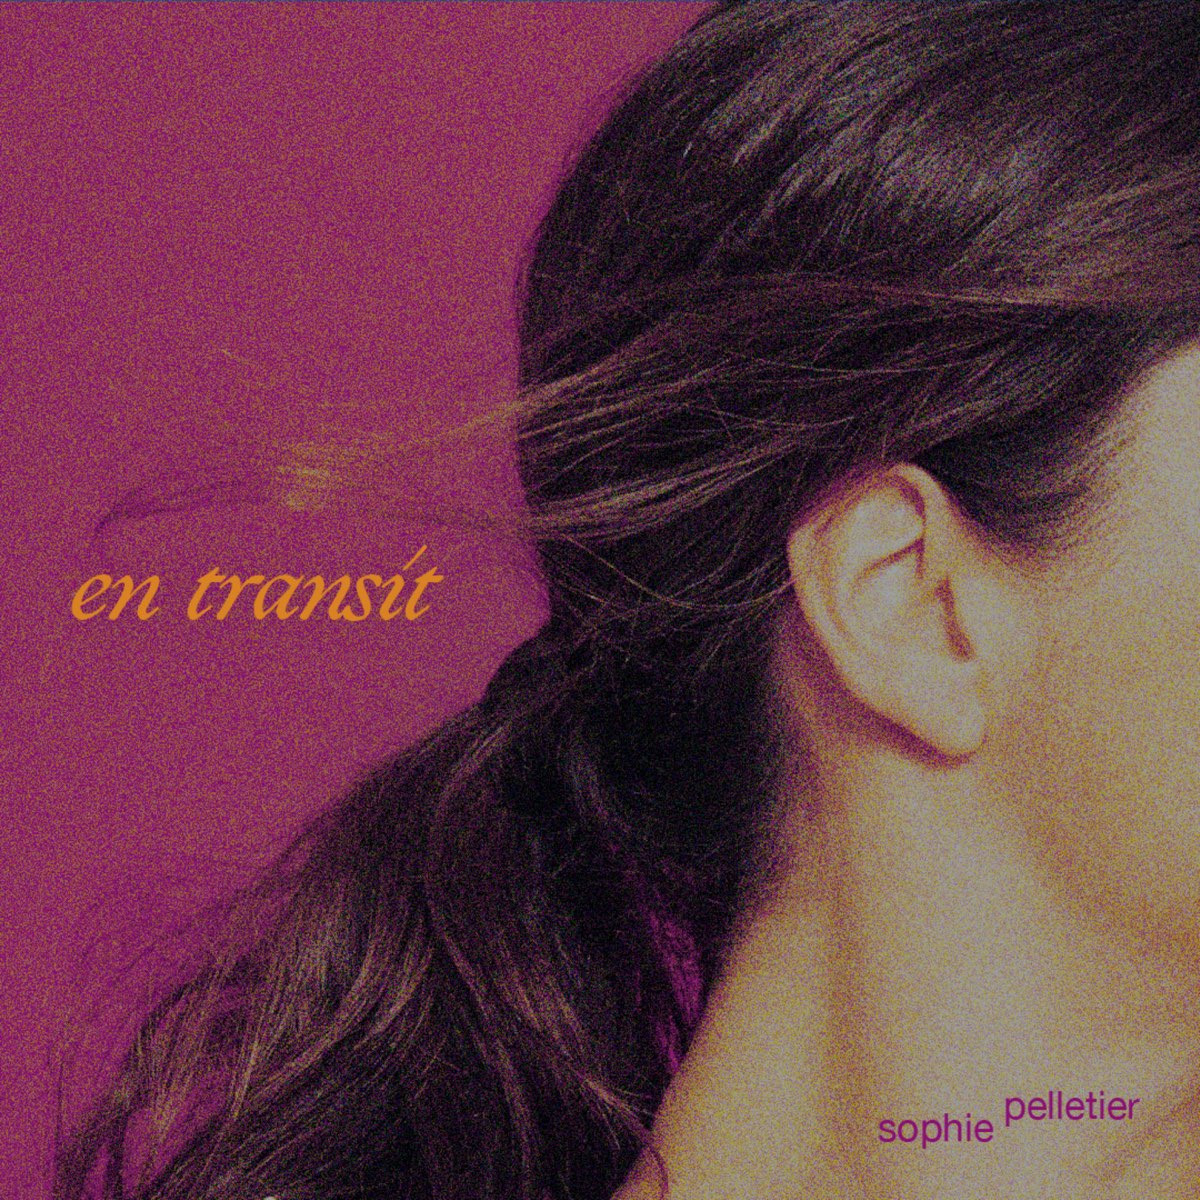 en transit - EP by Sophie Pelletier on Apple Music